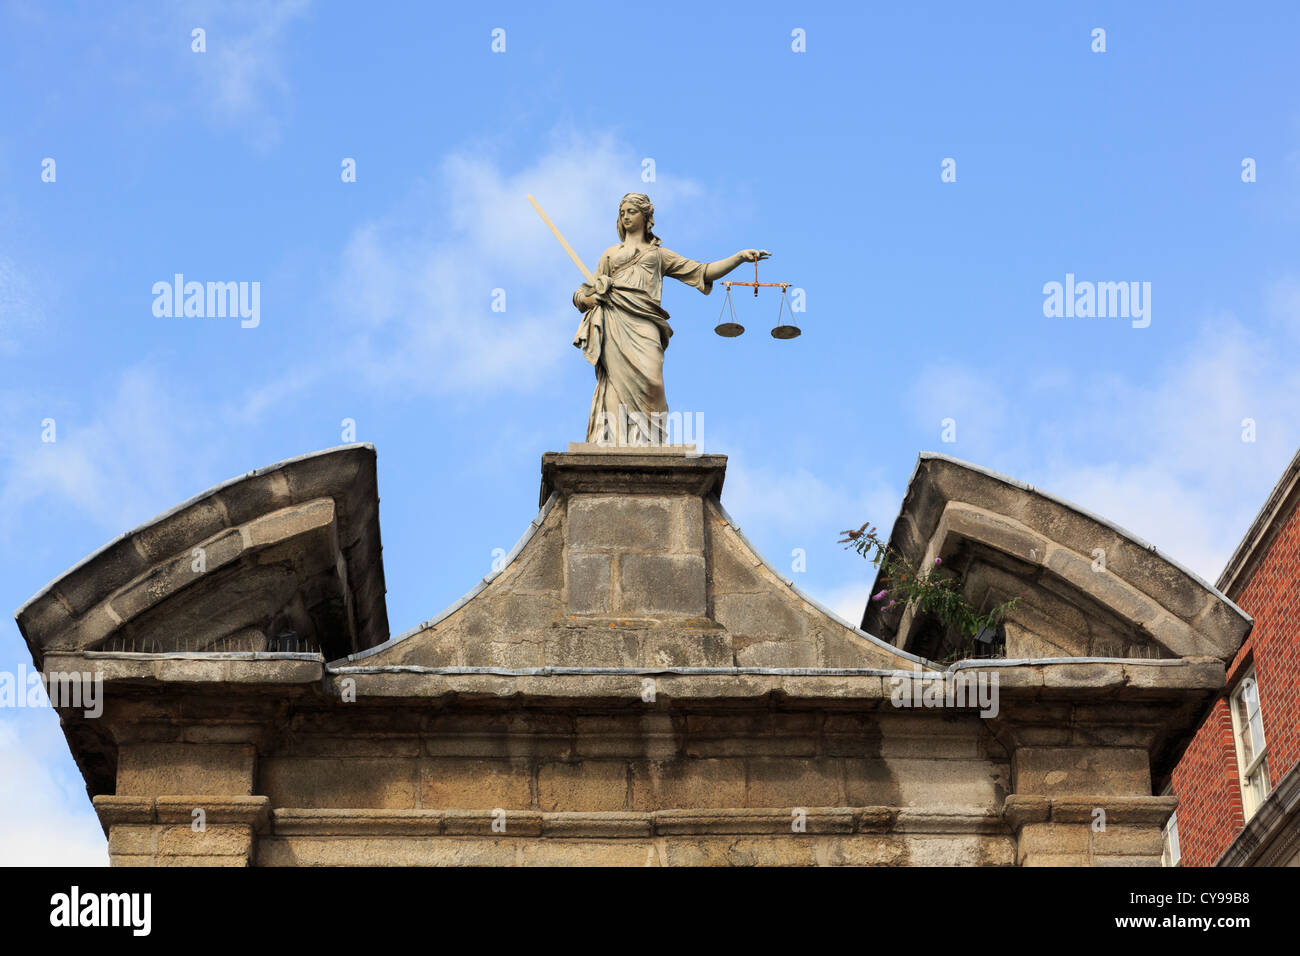 Statue de Dame Justice tenant au-dessus d'une porte d'entrée des échelles au château de Dublin. Dublin, République d'Irlande, Irlande. Banque D'Images